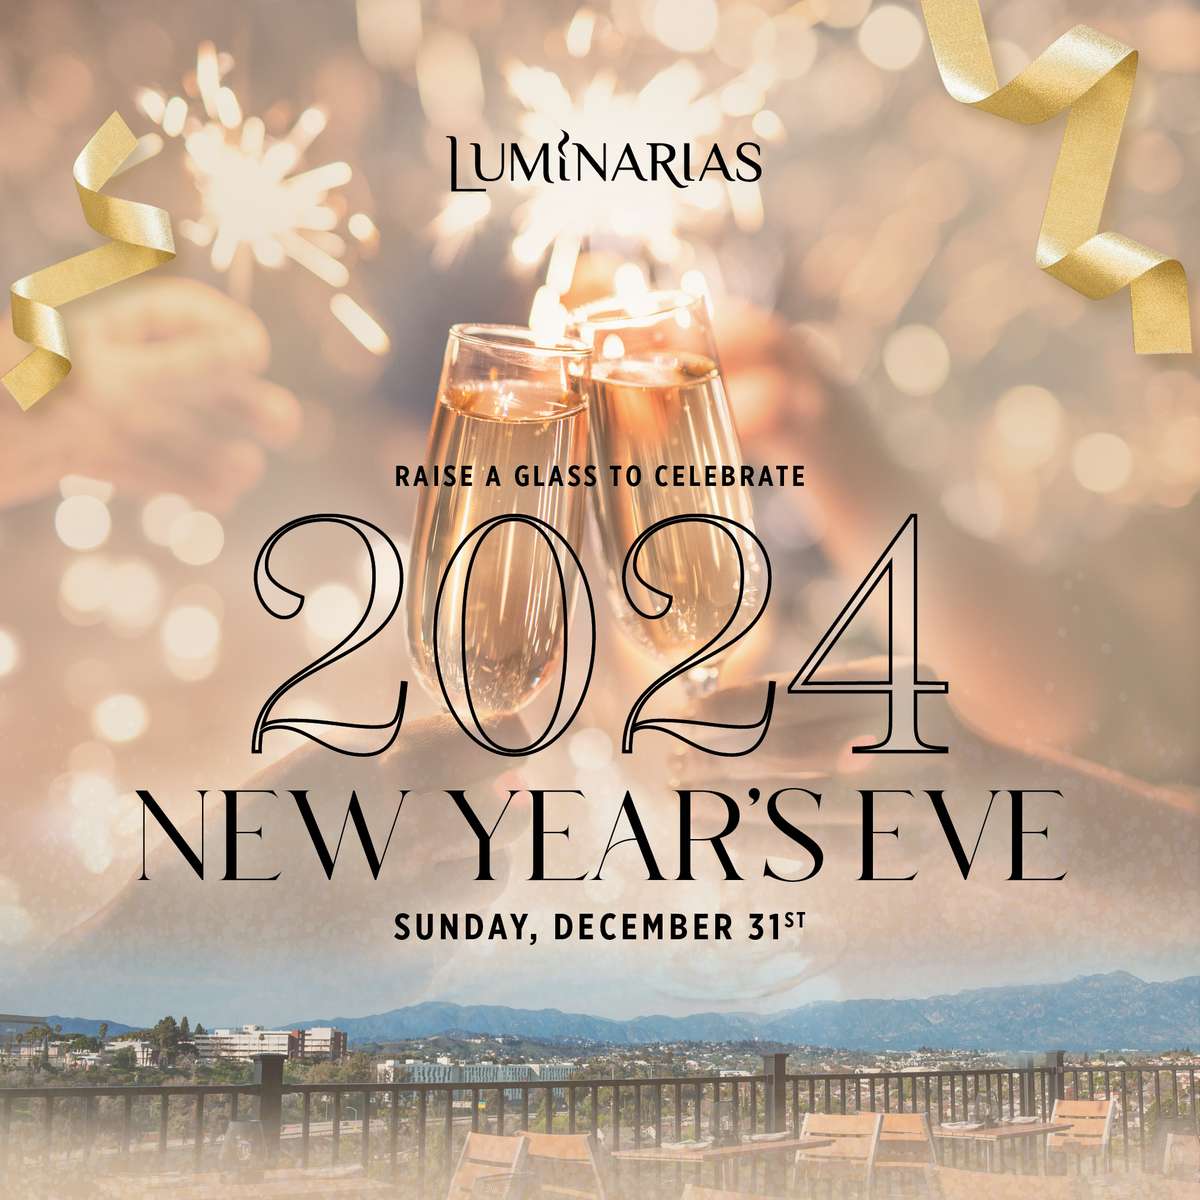 New Year's Eve at Luminarias